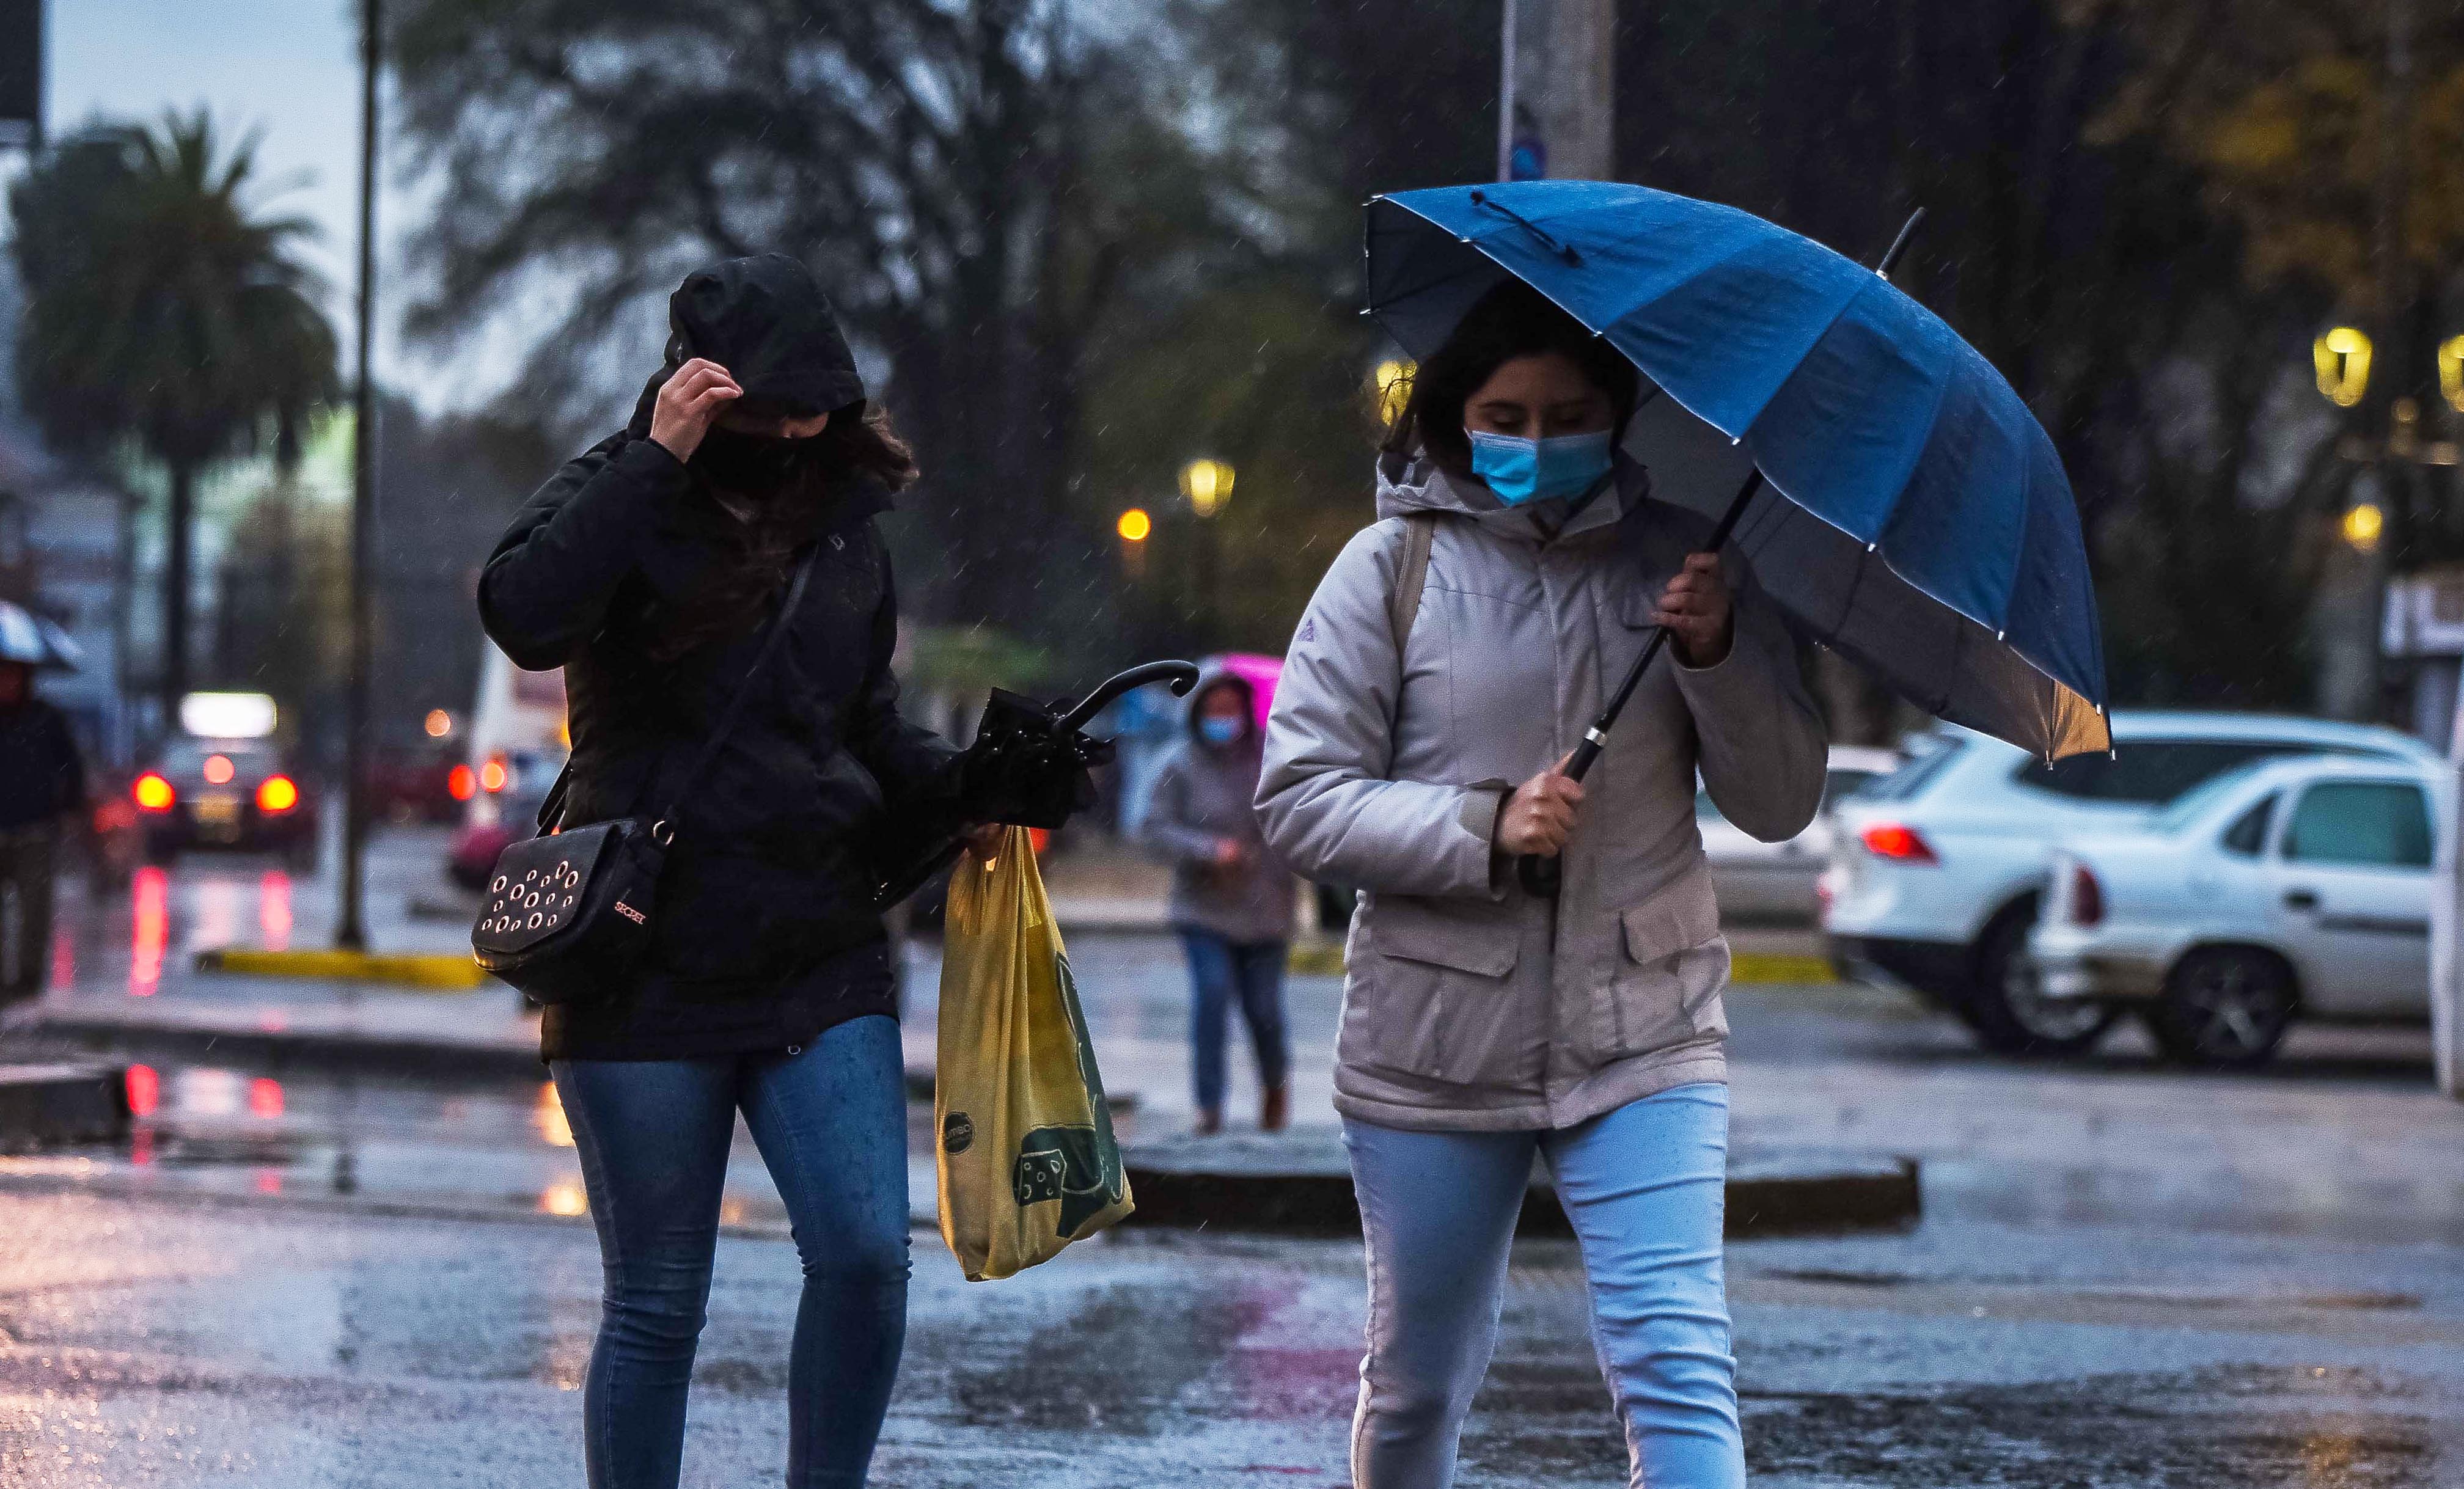 Temuco: Temporal De Lluvia Y Viento Afecta A La Ciudad